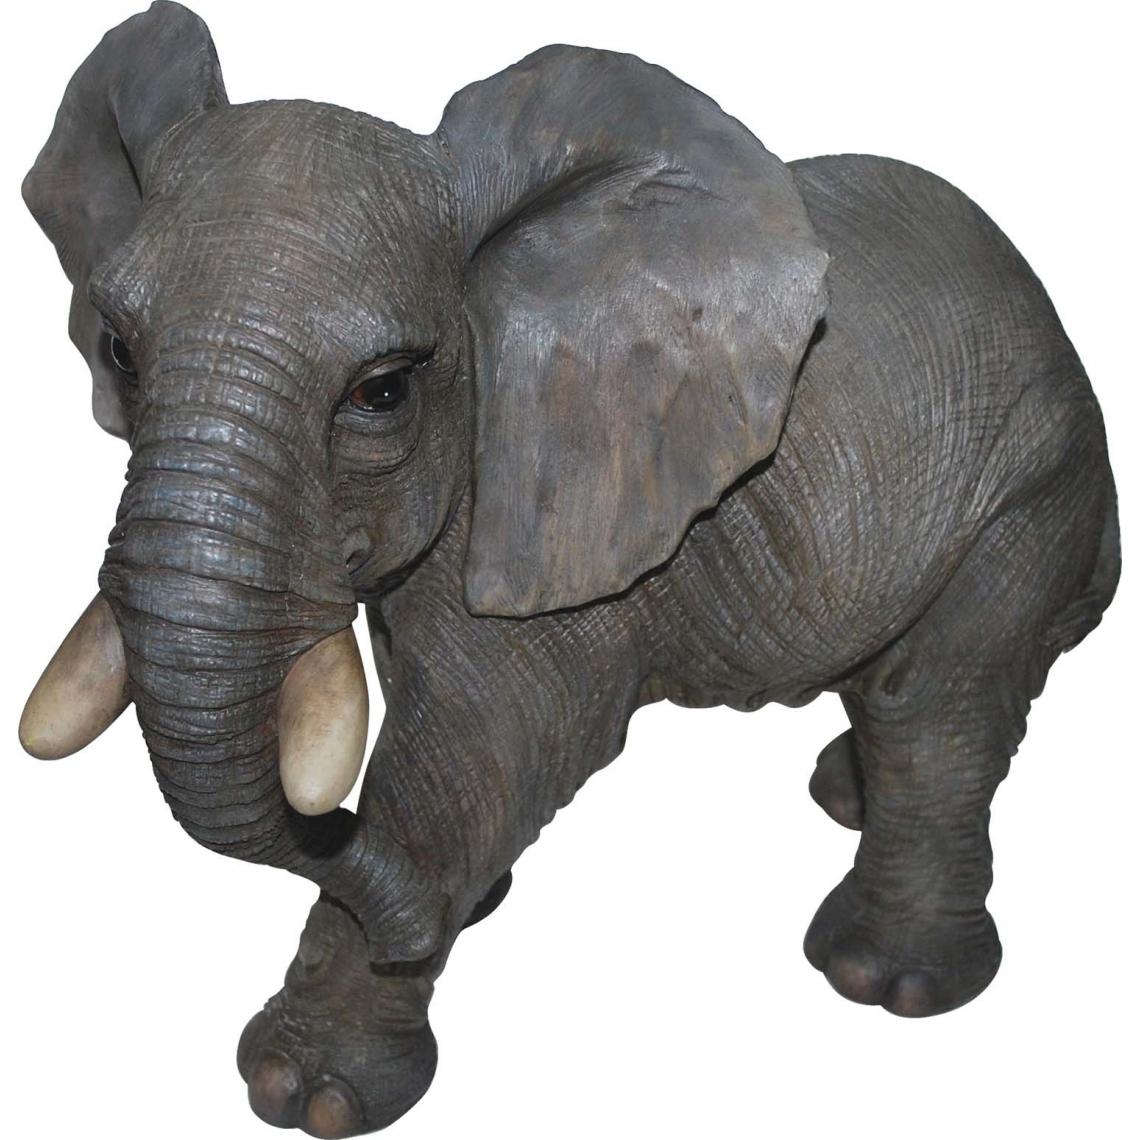 Vivid Arts - Elephant marchant en résine 45 cm - Petite déco d'exterieur